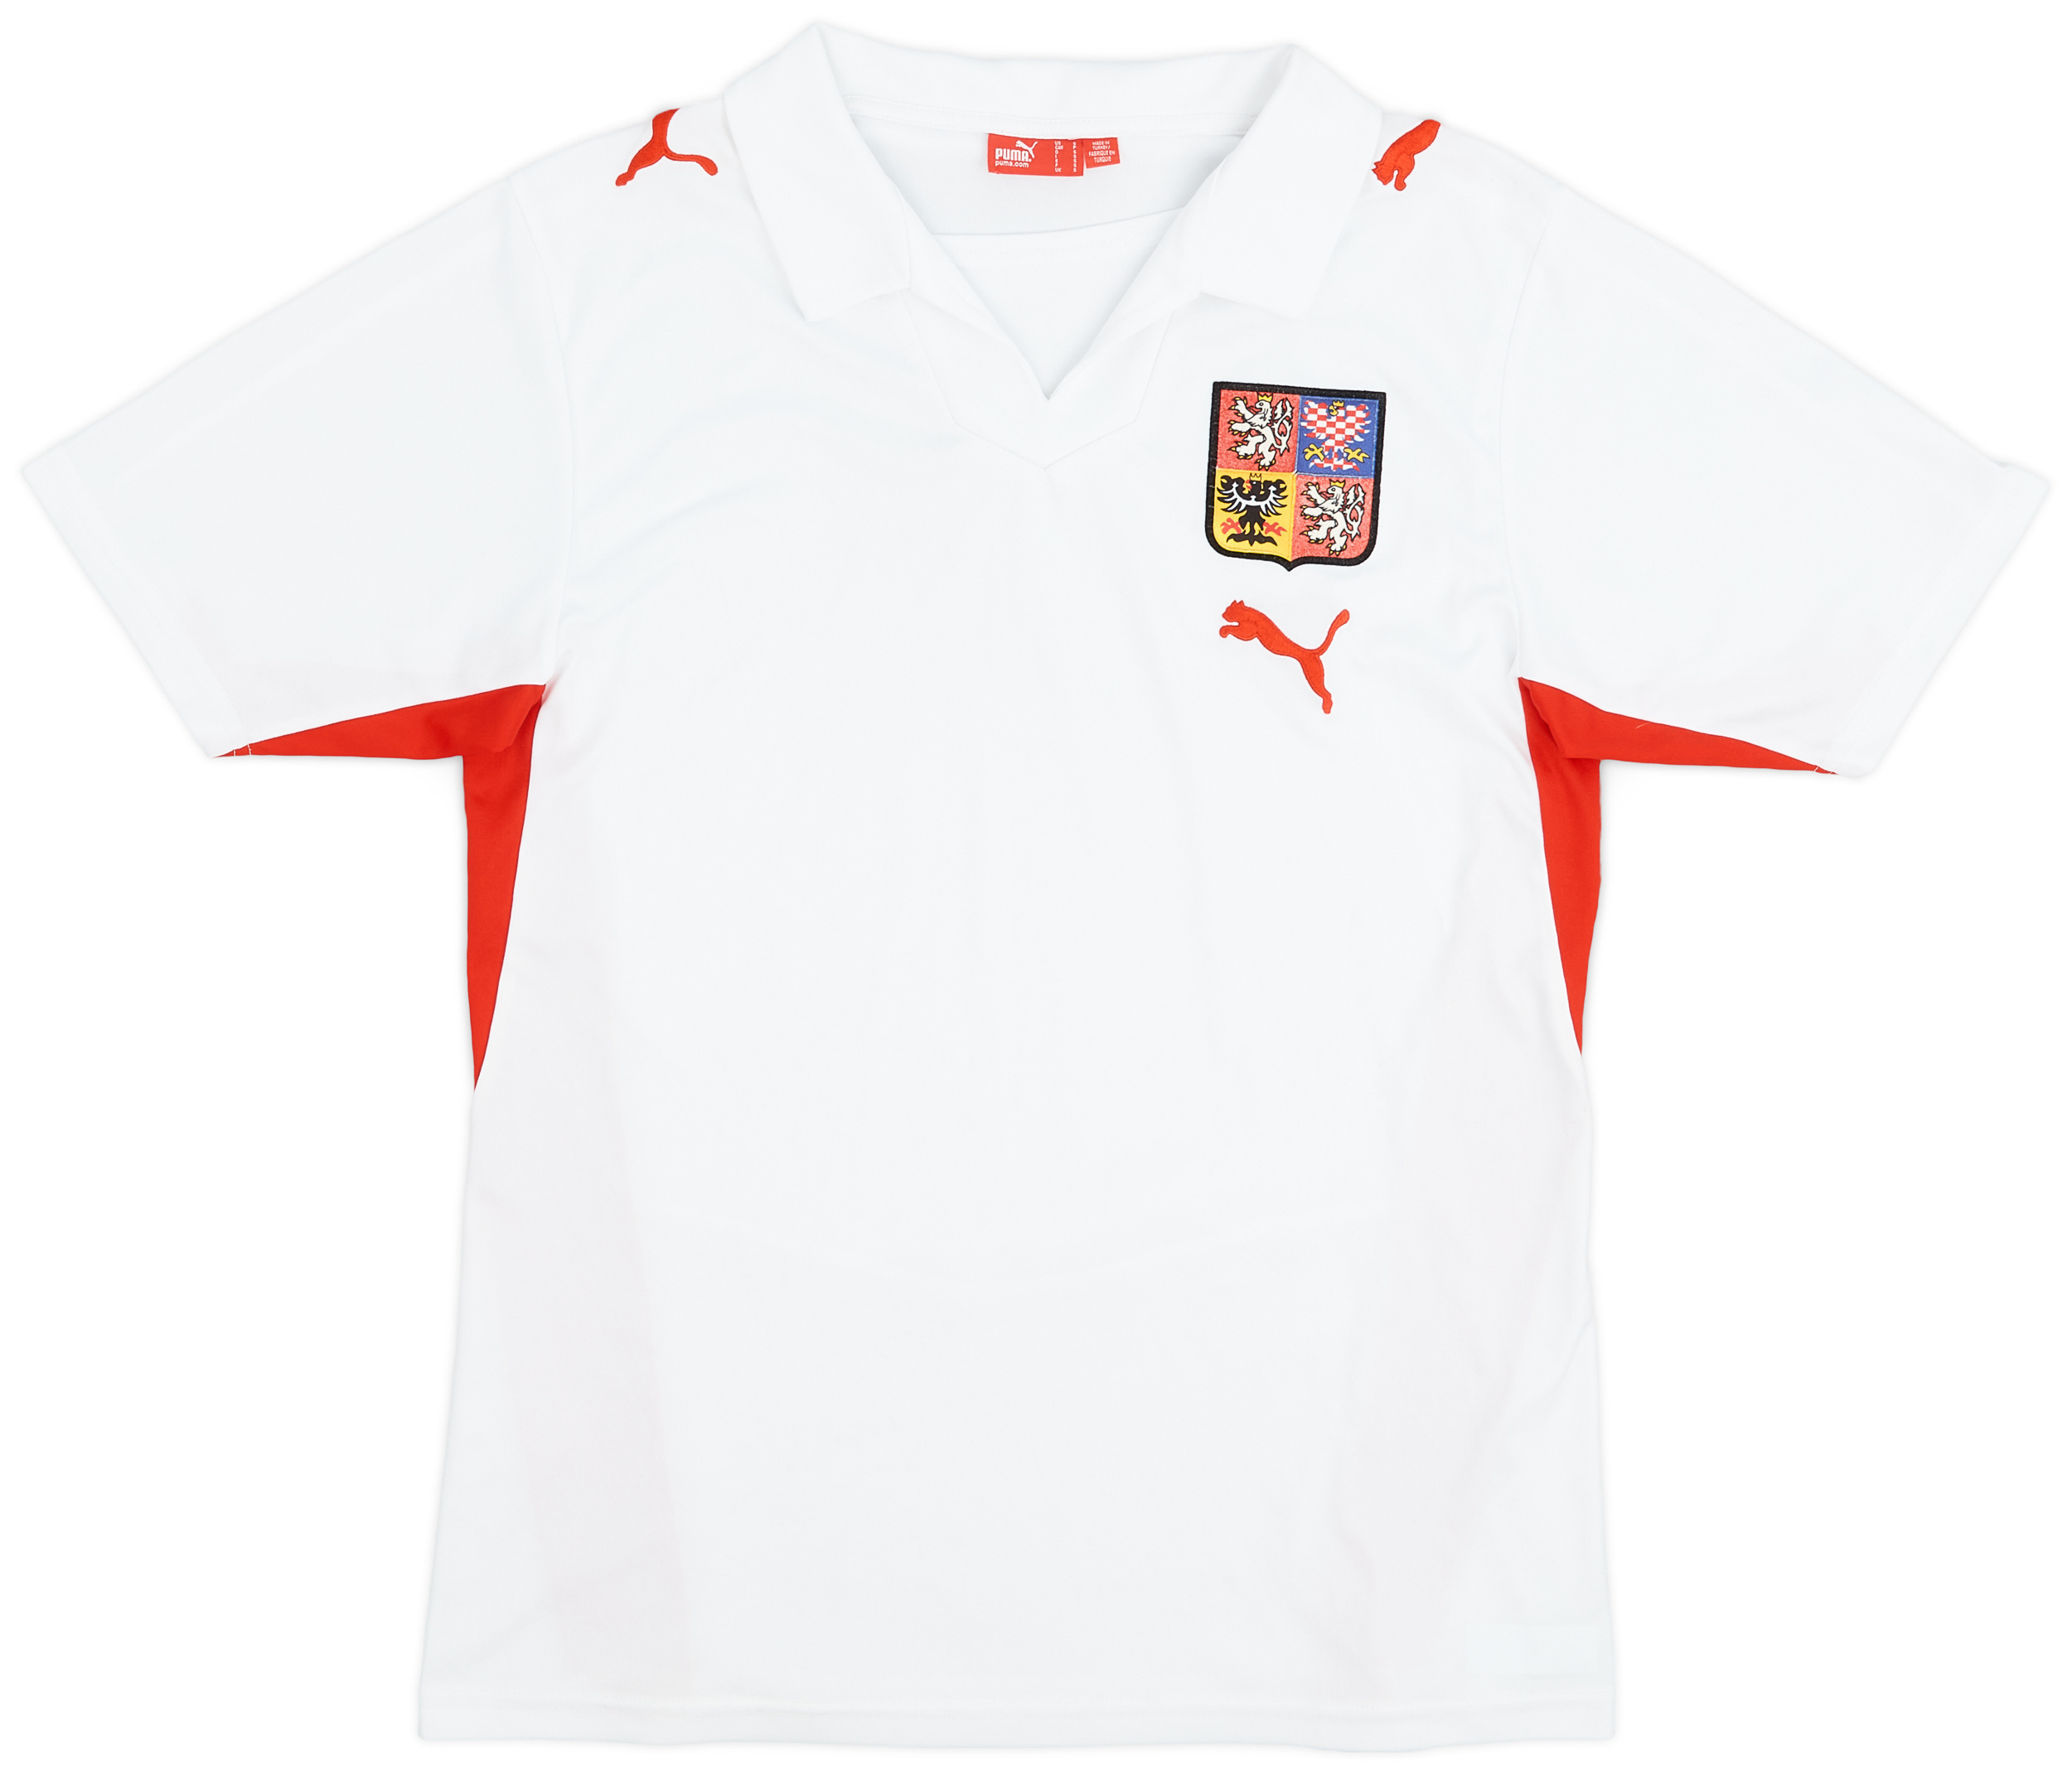 2008-09 Czech Republic Away Shirt - 5/10 - ()